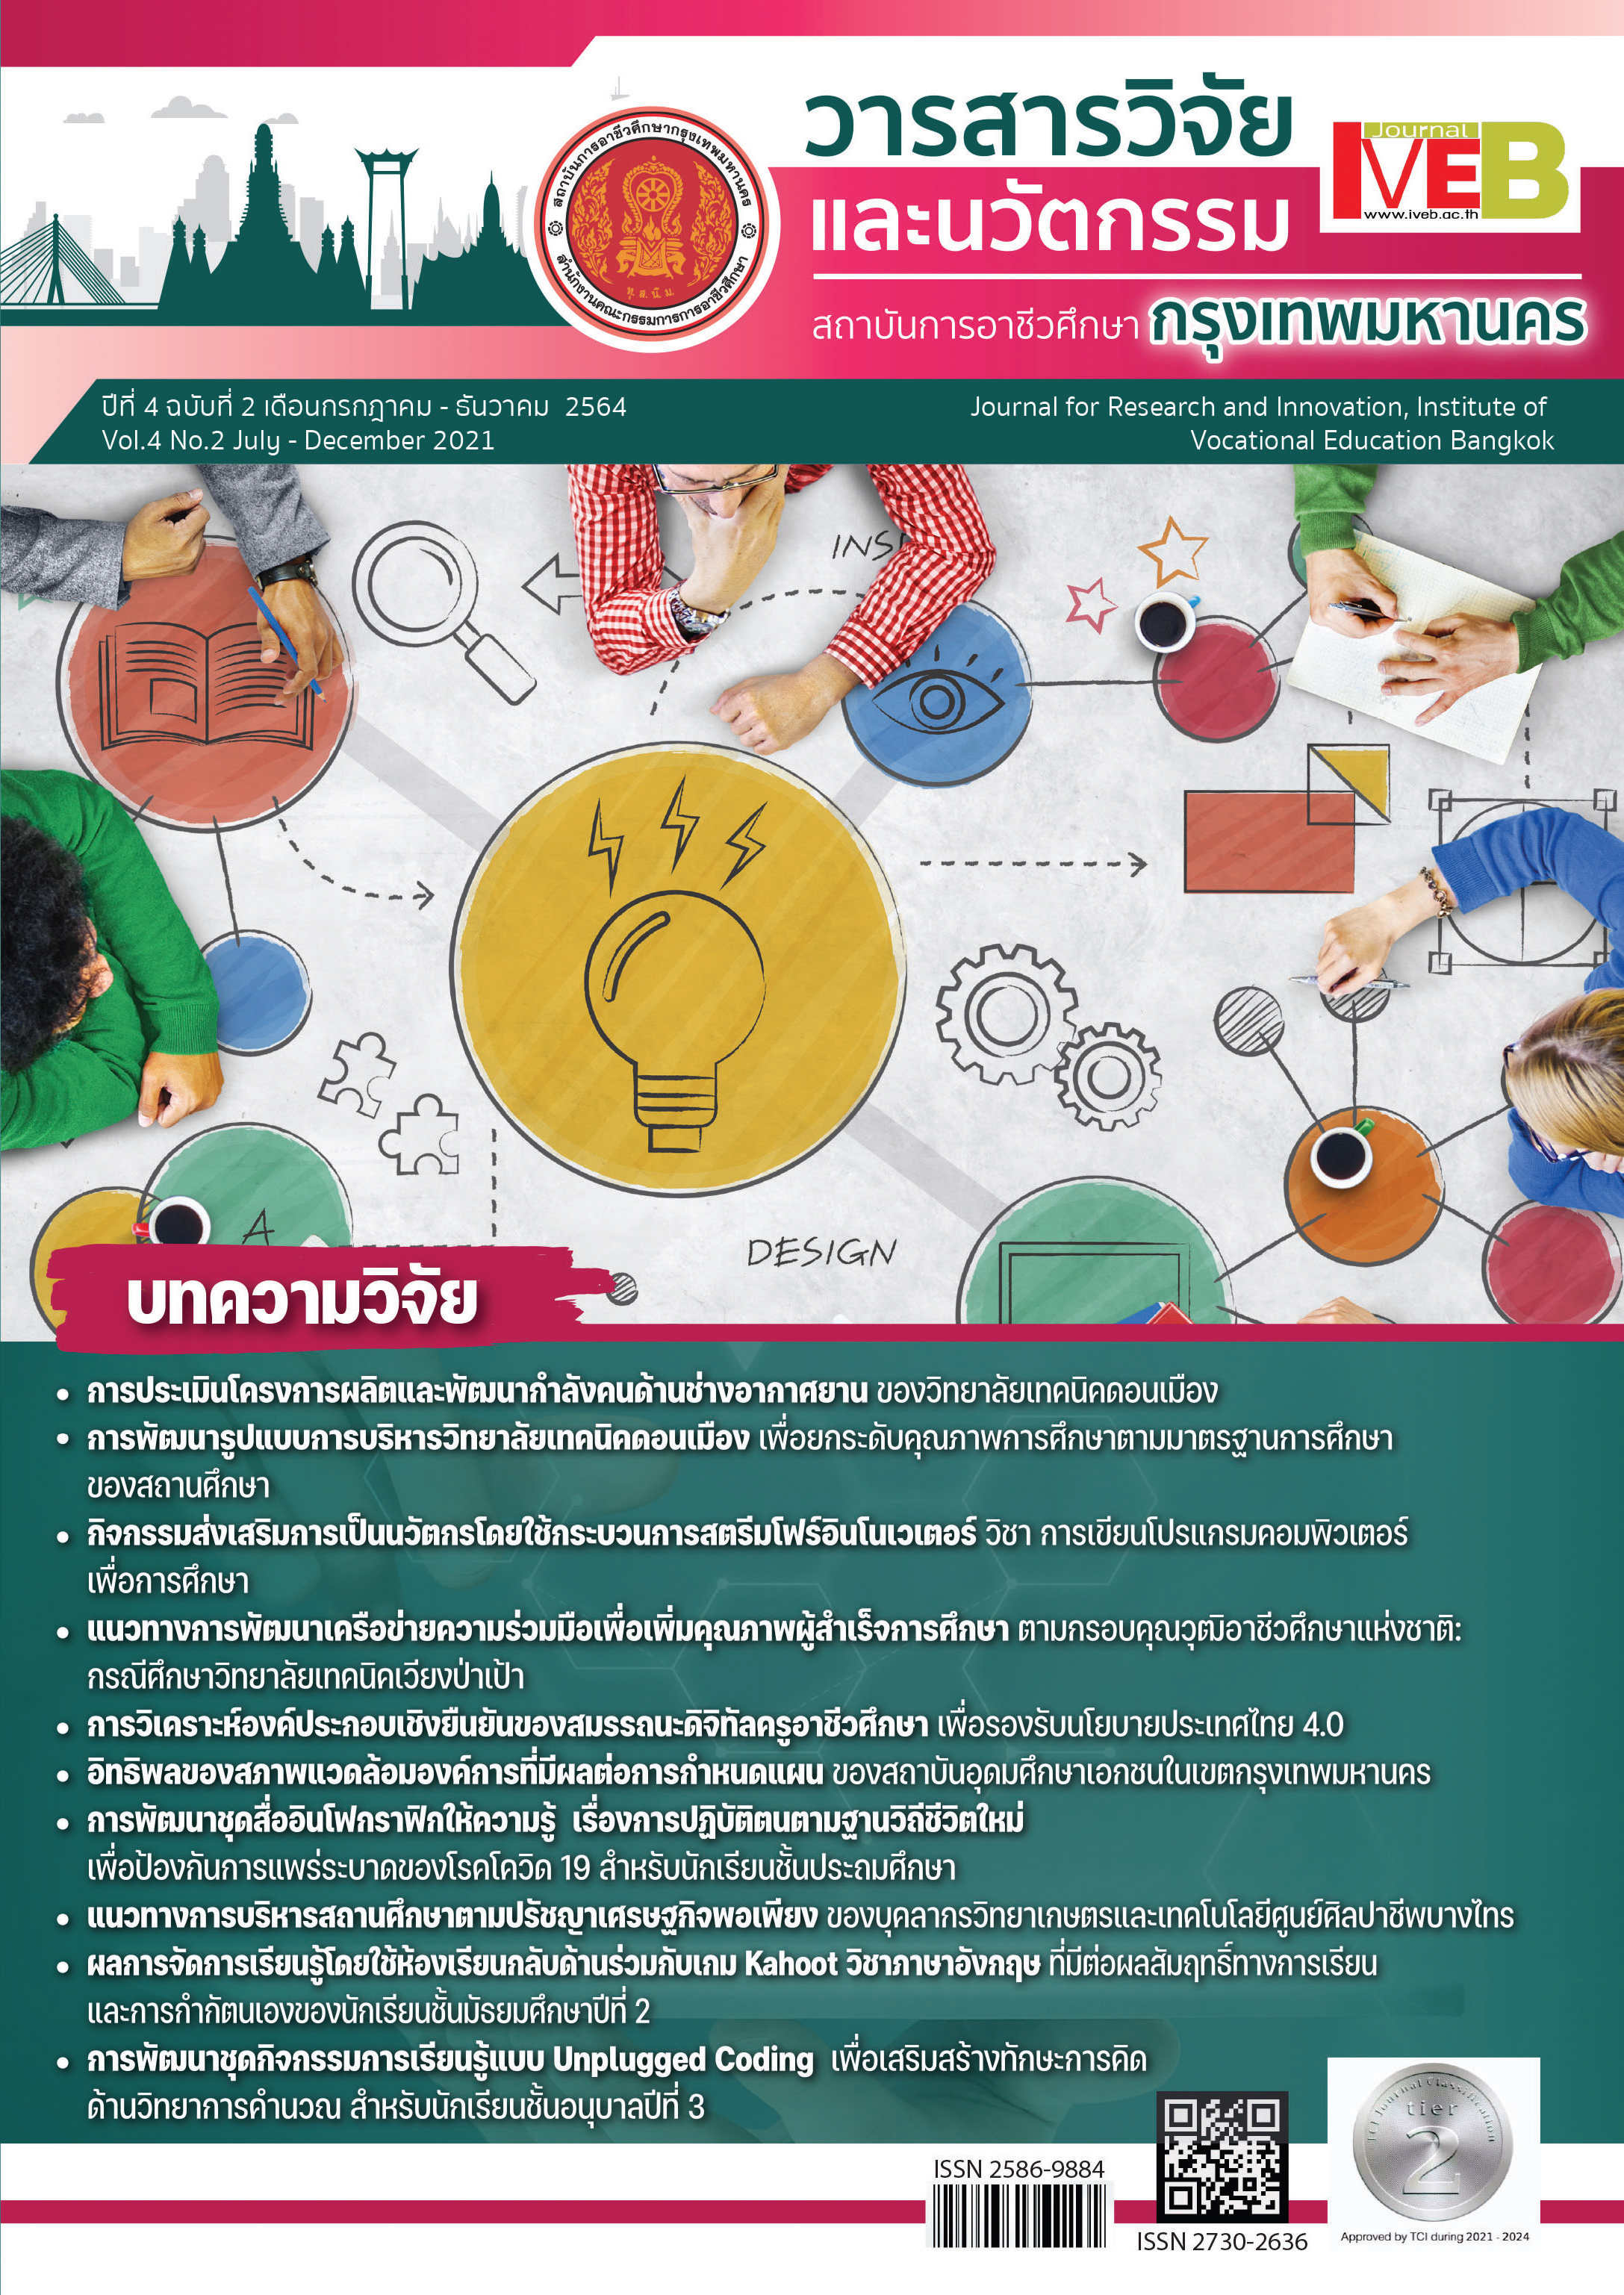 ปีที่ 4 ฉบับที่ 2 (2564) : วารสารวิชาการวิจัยและนวัตกรรม สถาบันการอาชีวศึกษากรุงเทพมหานคร